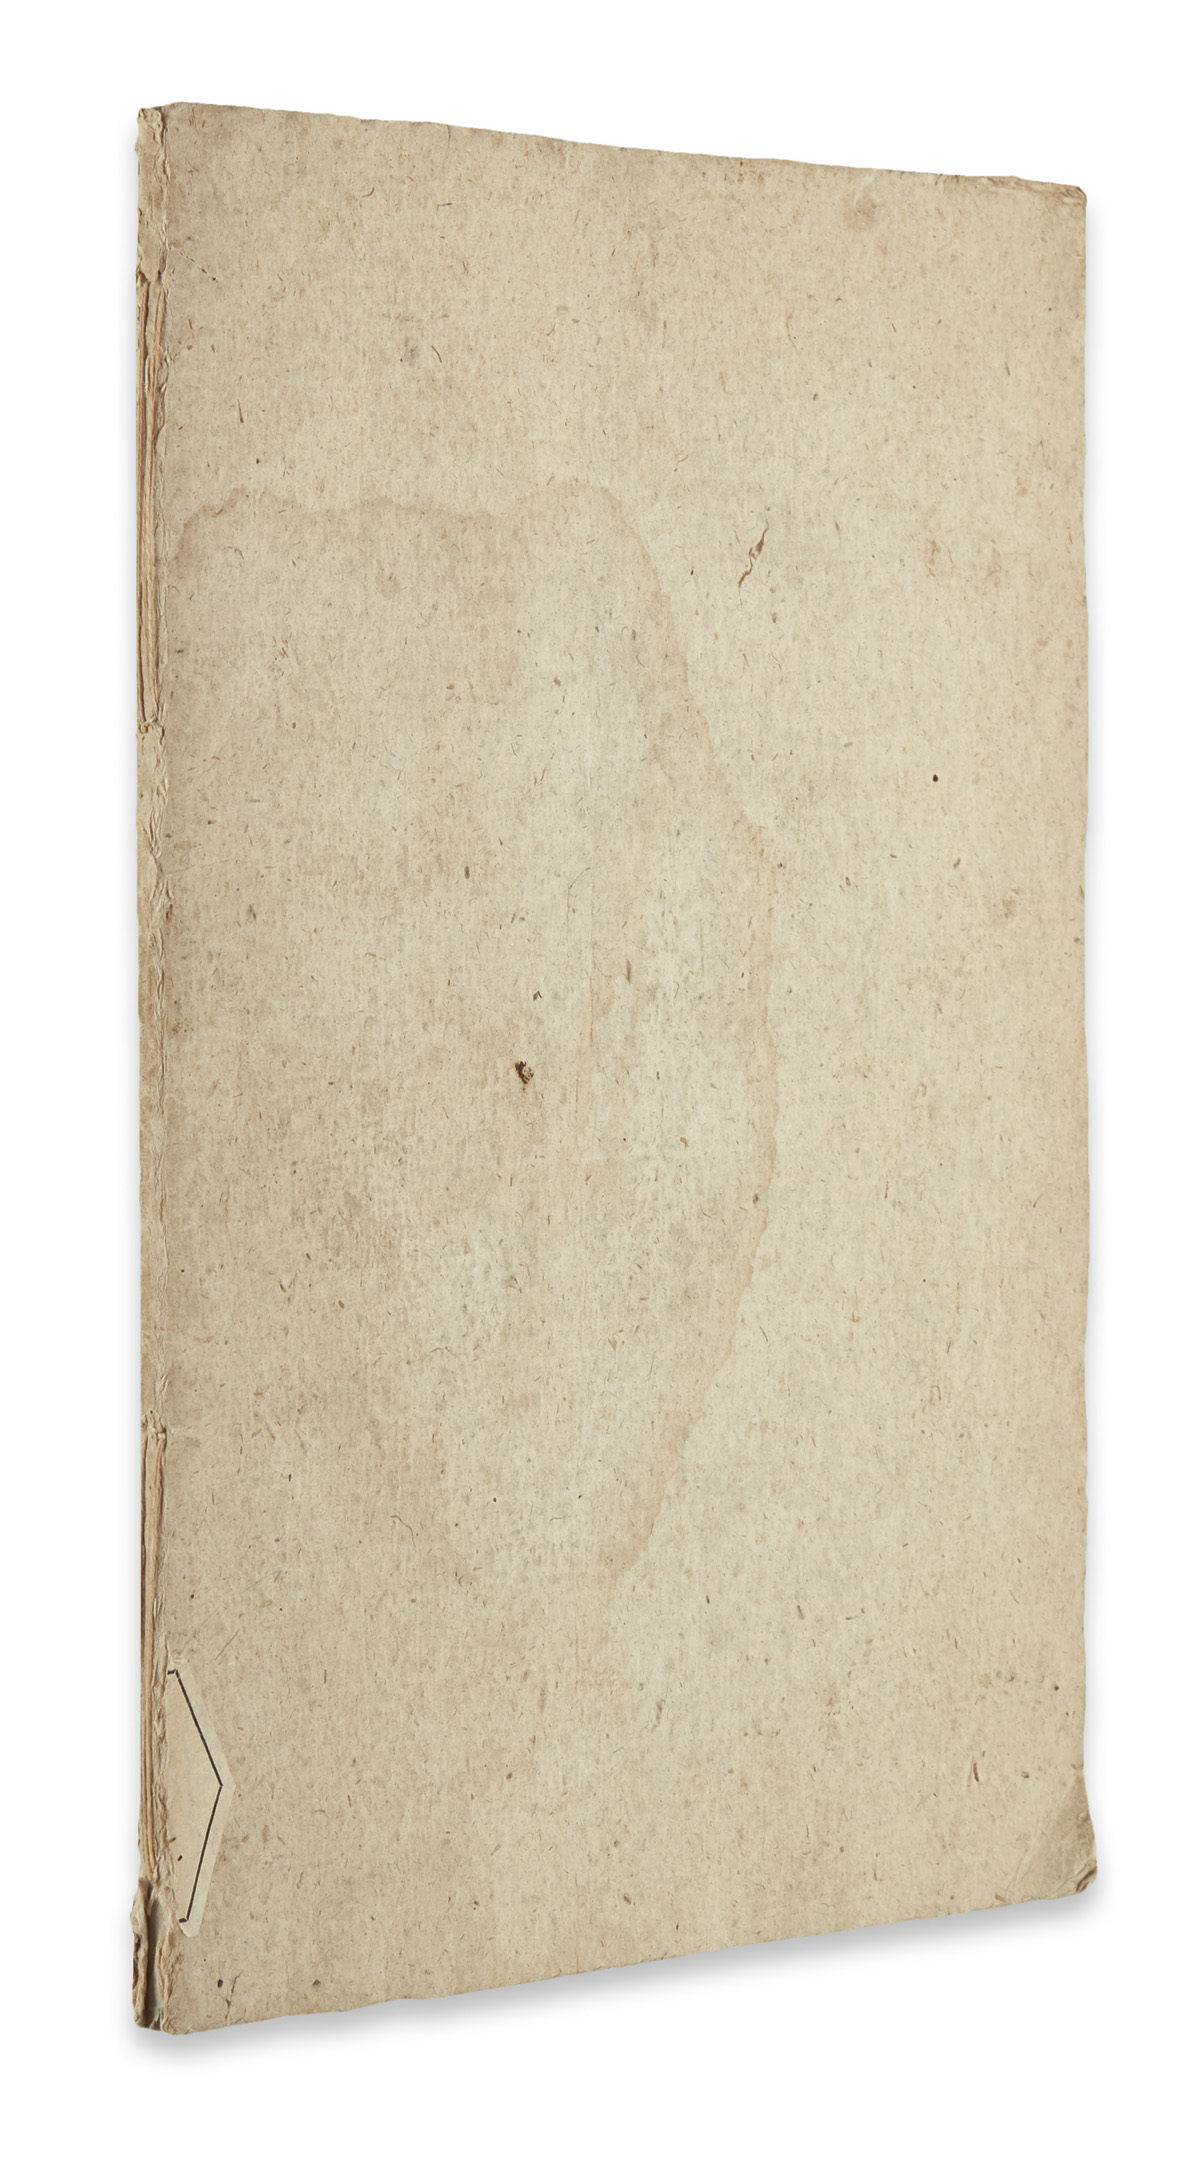 INCUNABULA  ALBERTUS MAGNUS. De mineralibus.  1491